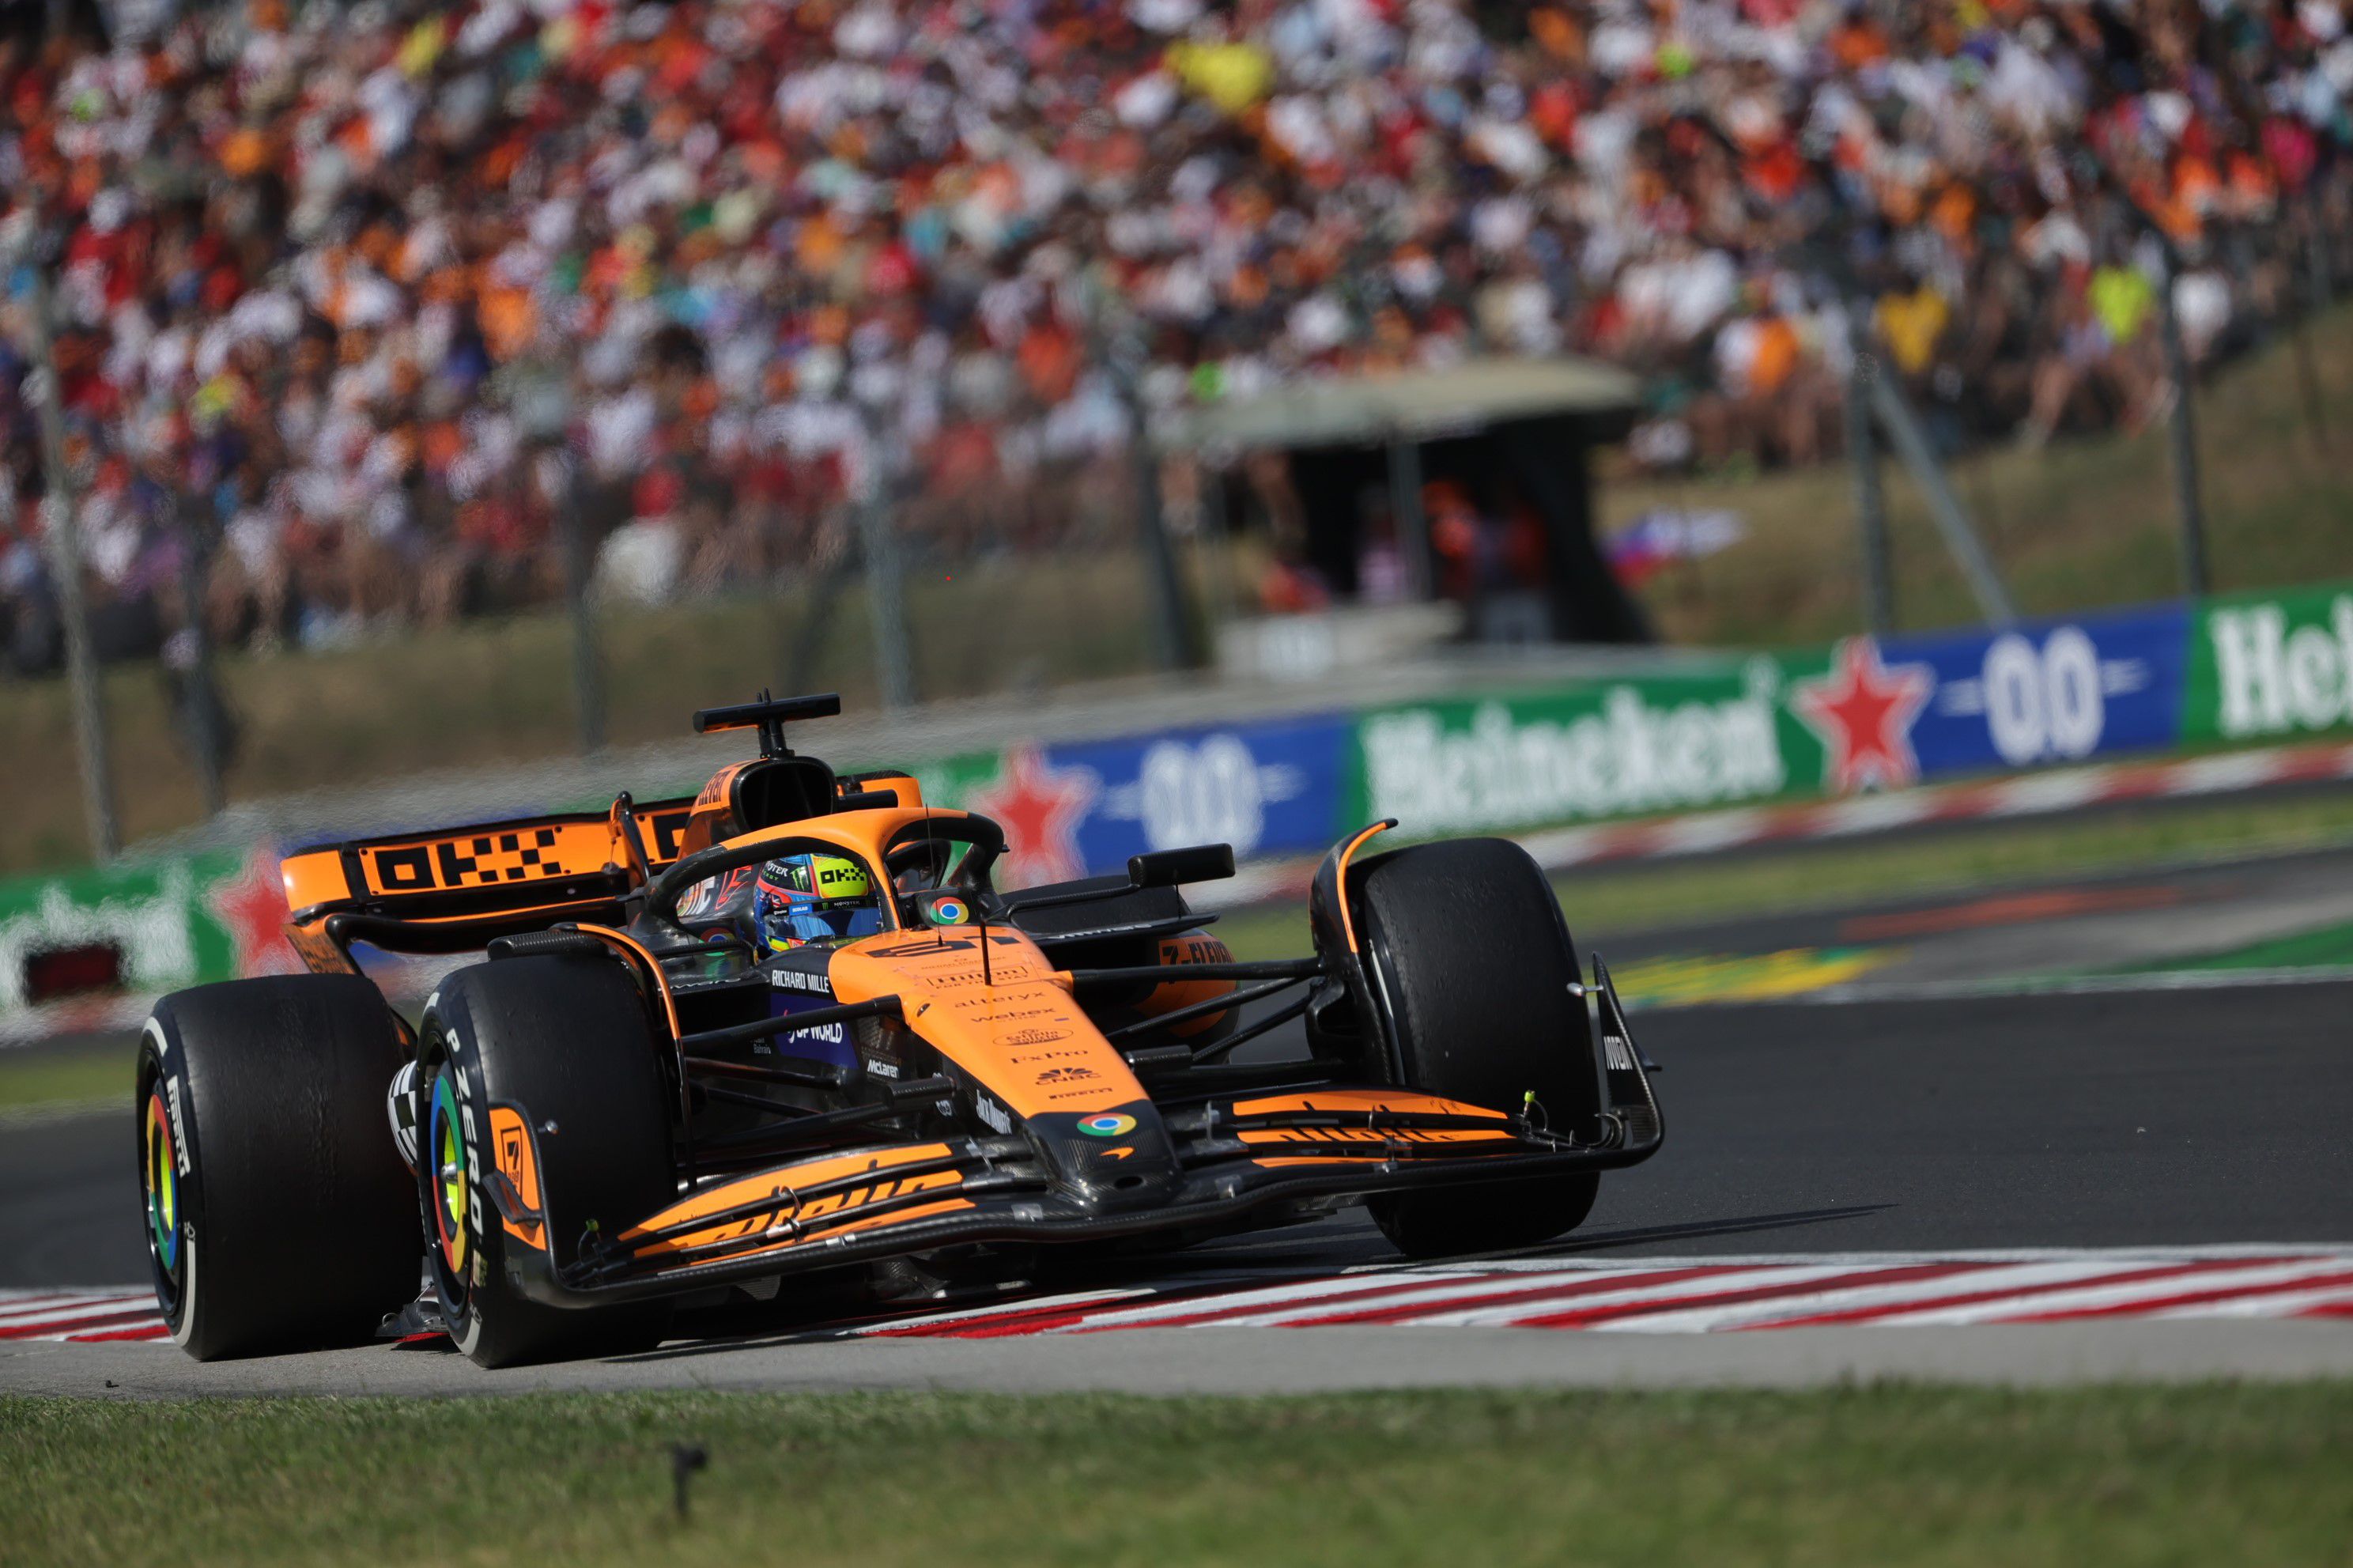 F1-hírek: Hamilton „megreptette” Verstappent, Piastri a McLaren házicsatája után szerezte meg első futamgyőzelmét a Hungaroringen